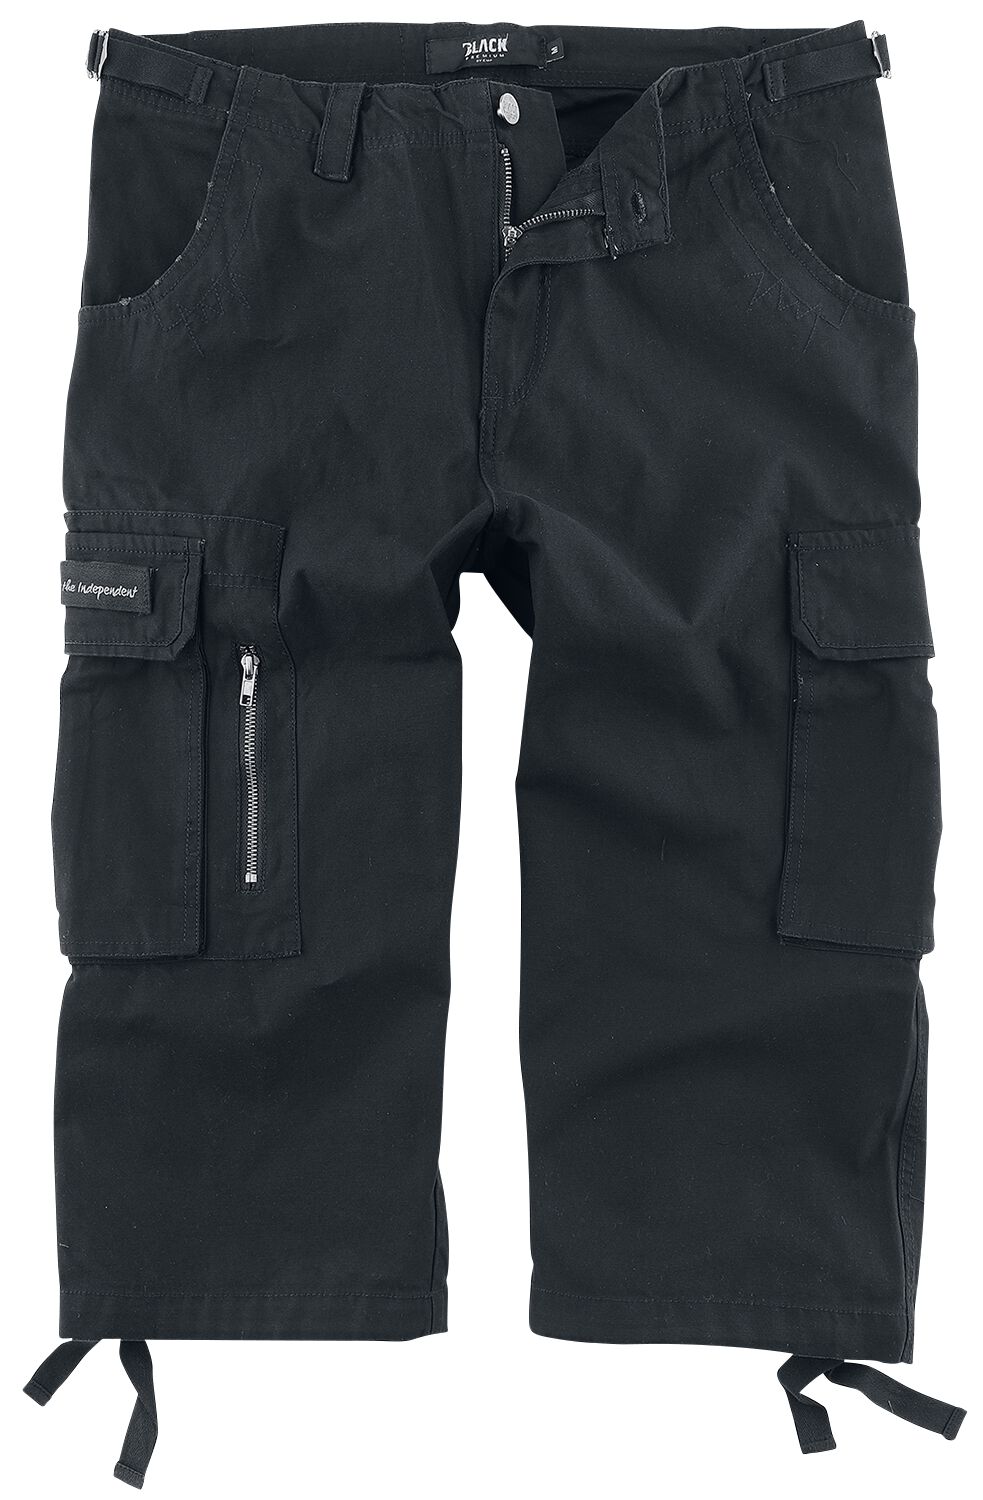 Black Premium by EMP 3/4 Army Vintage Shorts Short schwarz in M